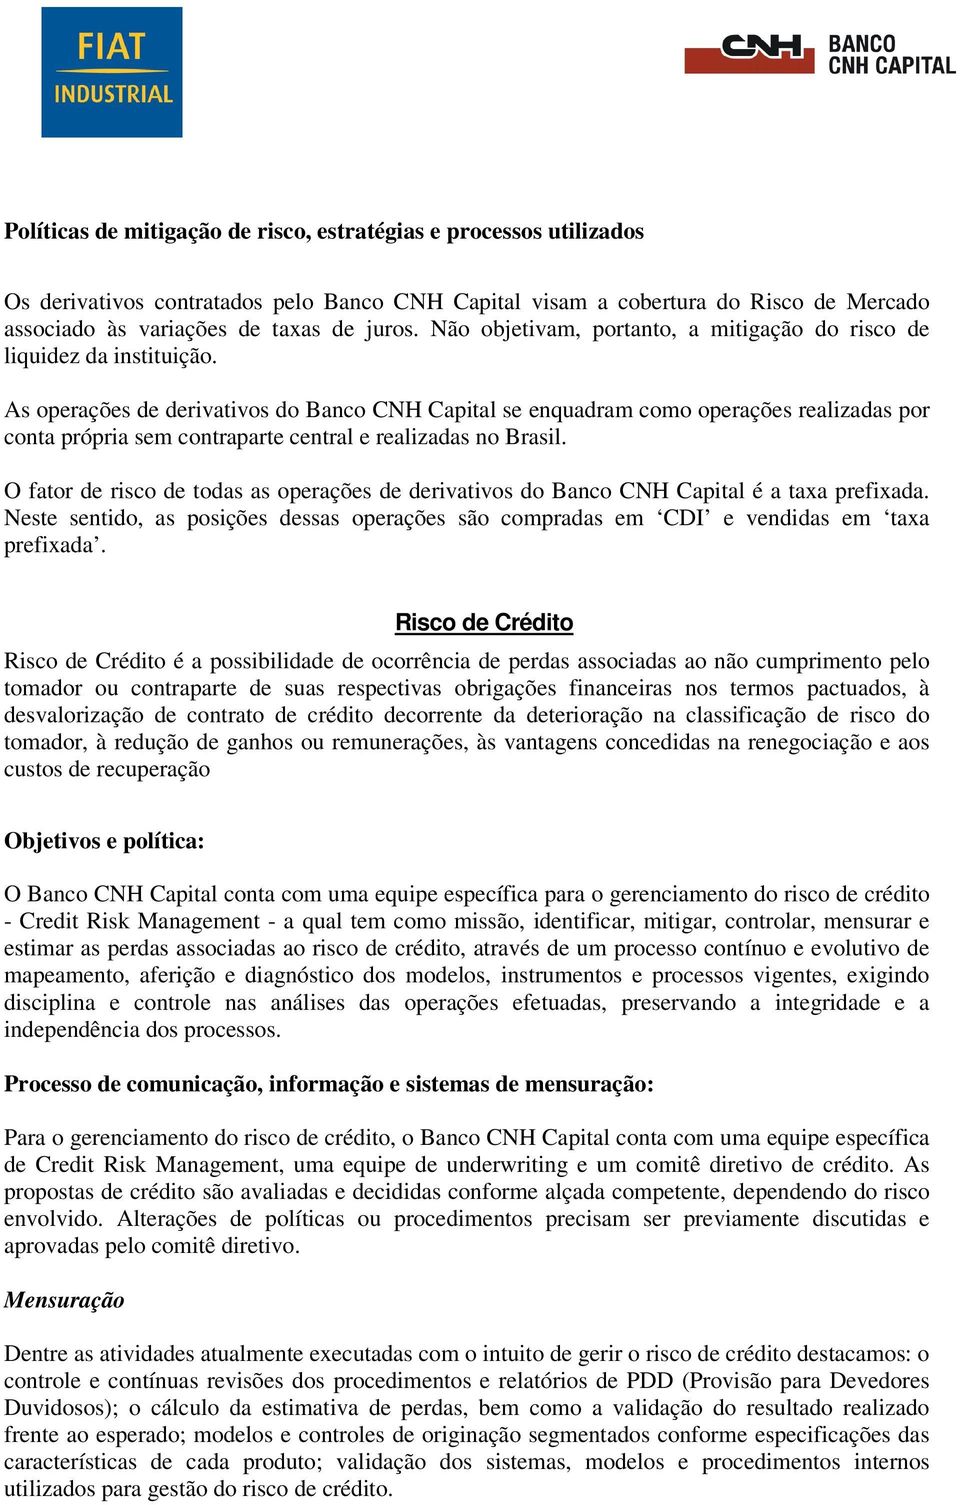 As operações de derivativos do Banco CNH Capital se enquadram como operações realizadas por conta própria sem contraparte central e realizadas no Brasil.